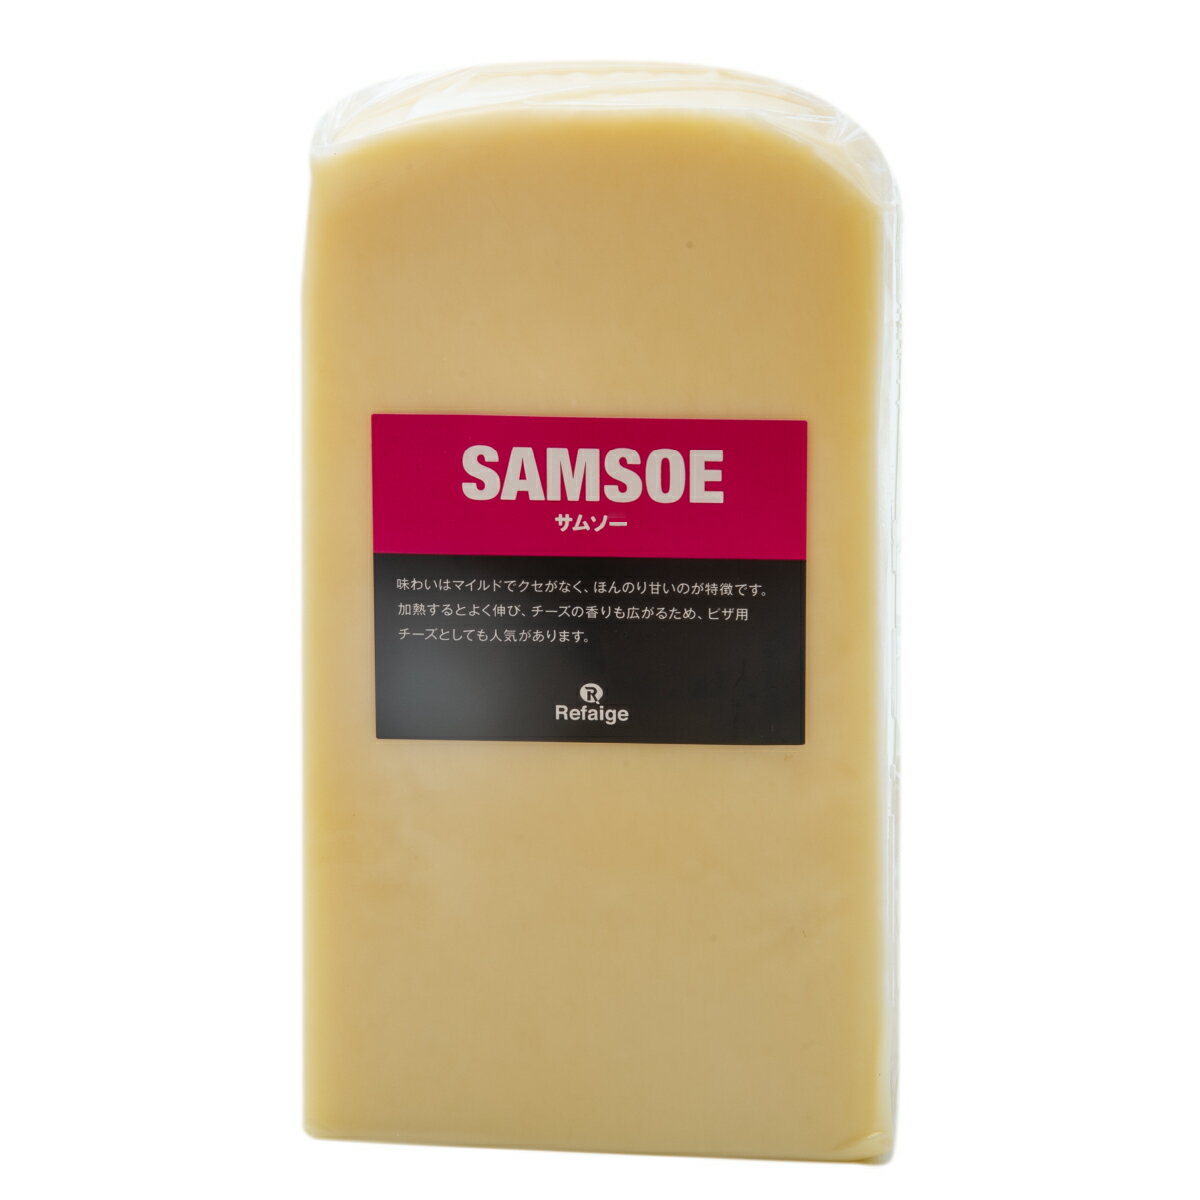 サムソー チーズ 約950gカット デンマーク産 セミハードチーズ 無添加 チーズ専門店 業務用 のびるチーズ